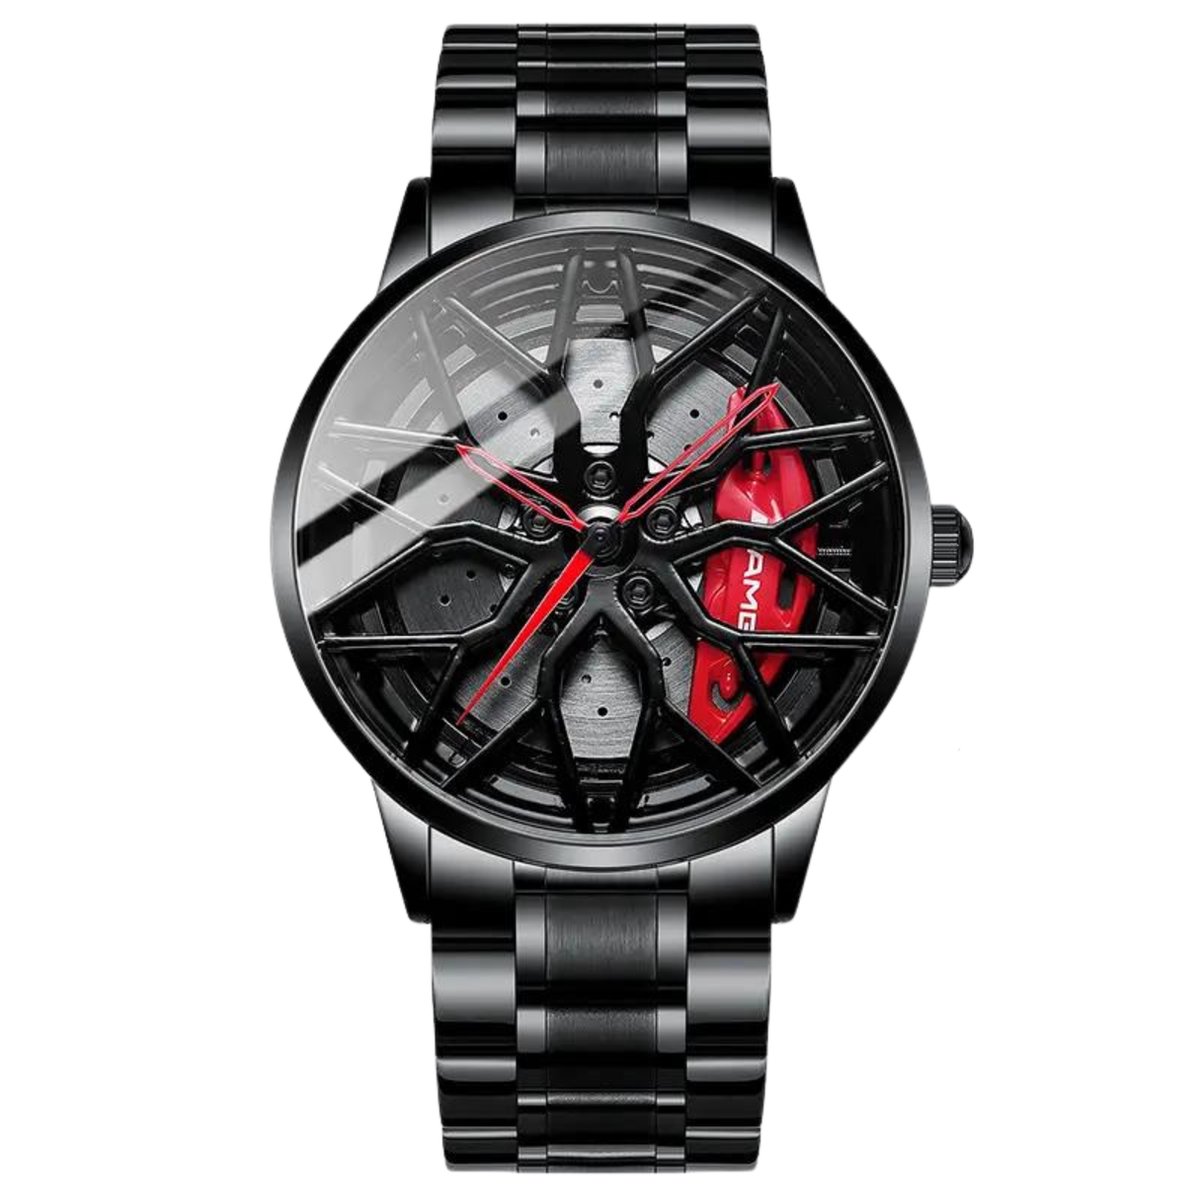 WielWatch - Horloge AMG - Sportauto - Horloges met stalen band- Herenmode - Velghorloge - Cadeau mannen - Autovelg - Draaiend - Autoliefhebber - horloge jongens